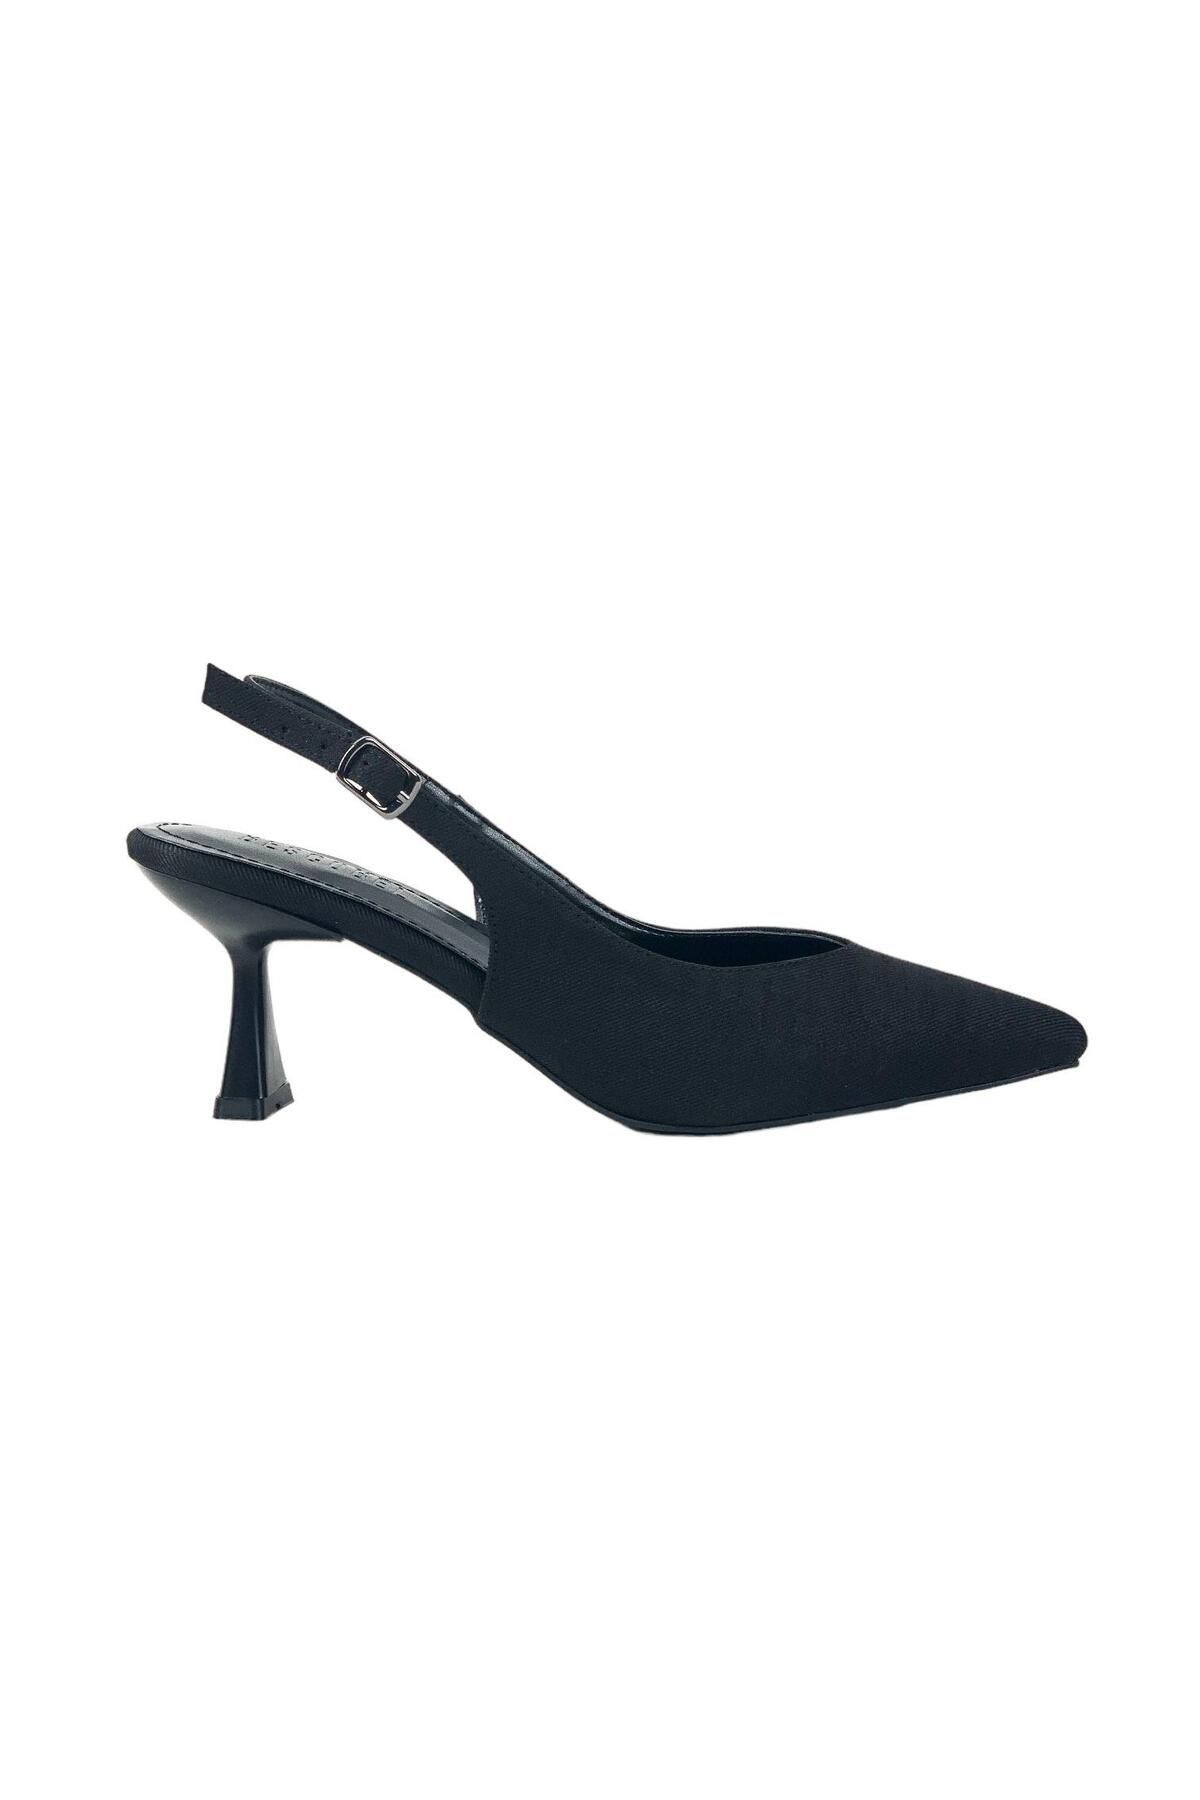 bescobel Kadın Pasge SiyahKot Sivri Burun Topuklu Sandalet 6 Cm 4114